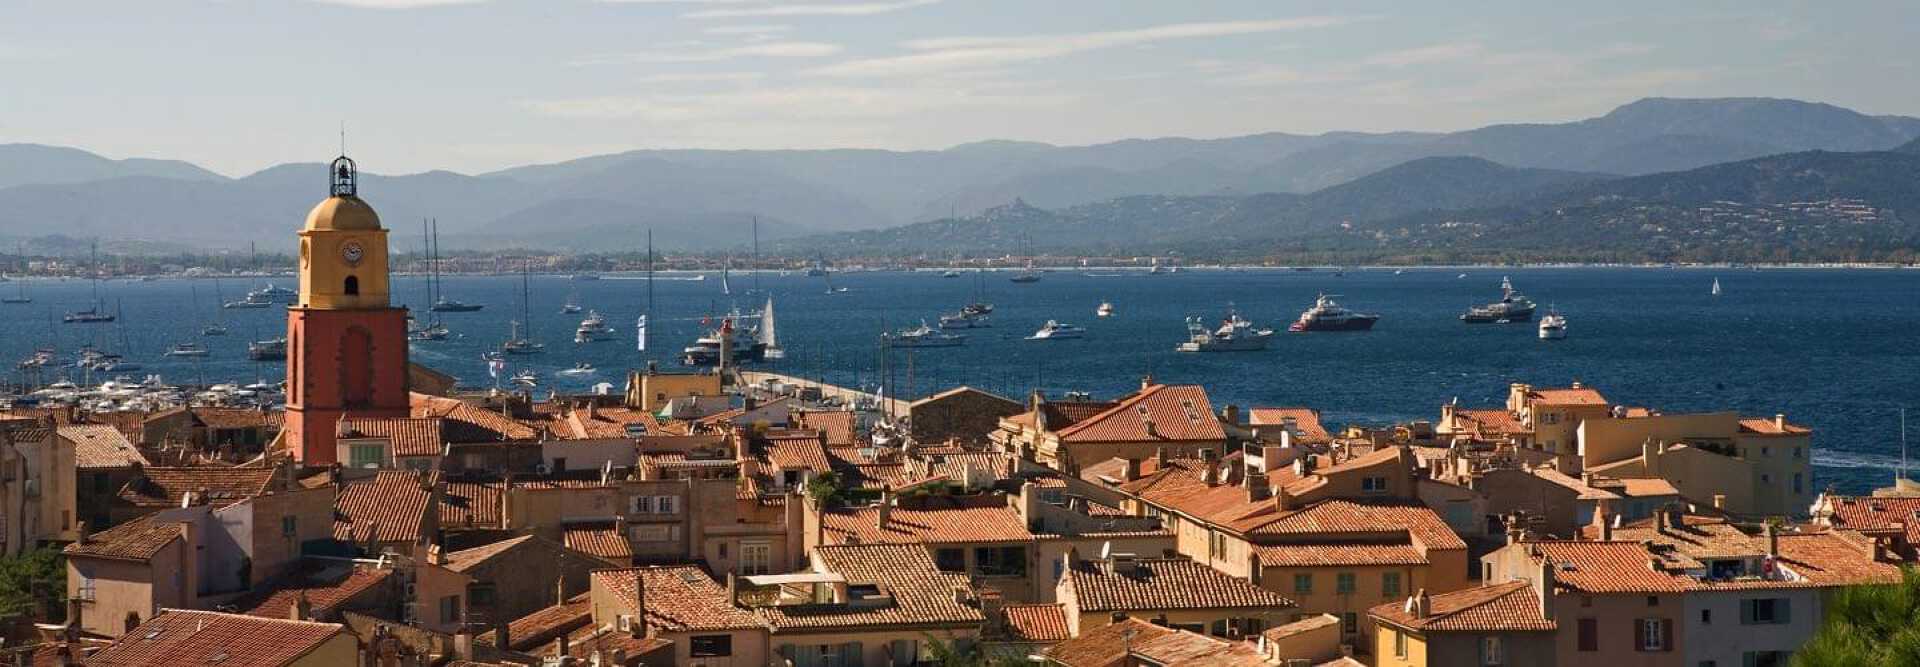 Vue sur les toits de tuiles rouges et le Clocher de Saint Tropez et les yachts sur la mer Méditerranée